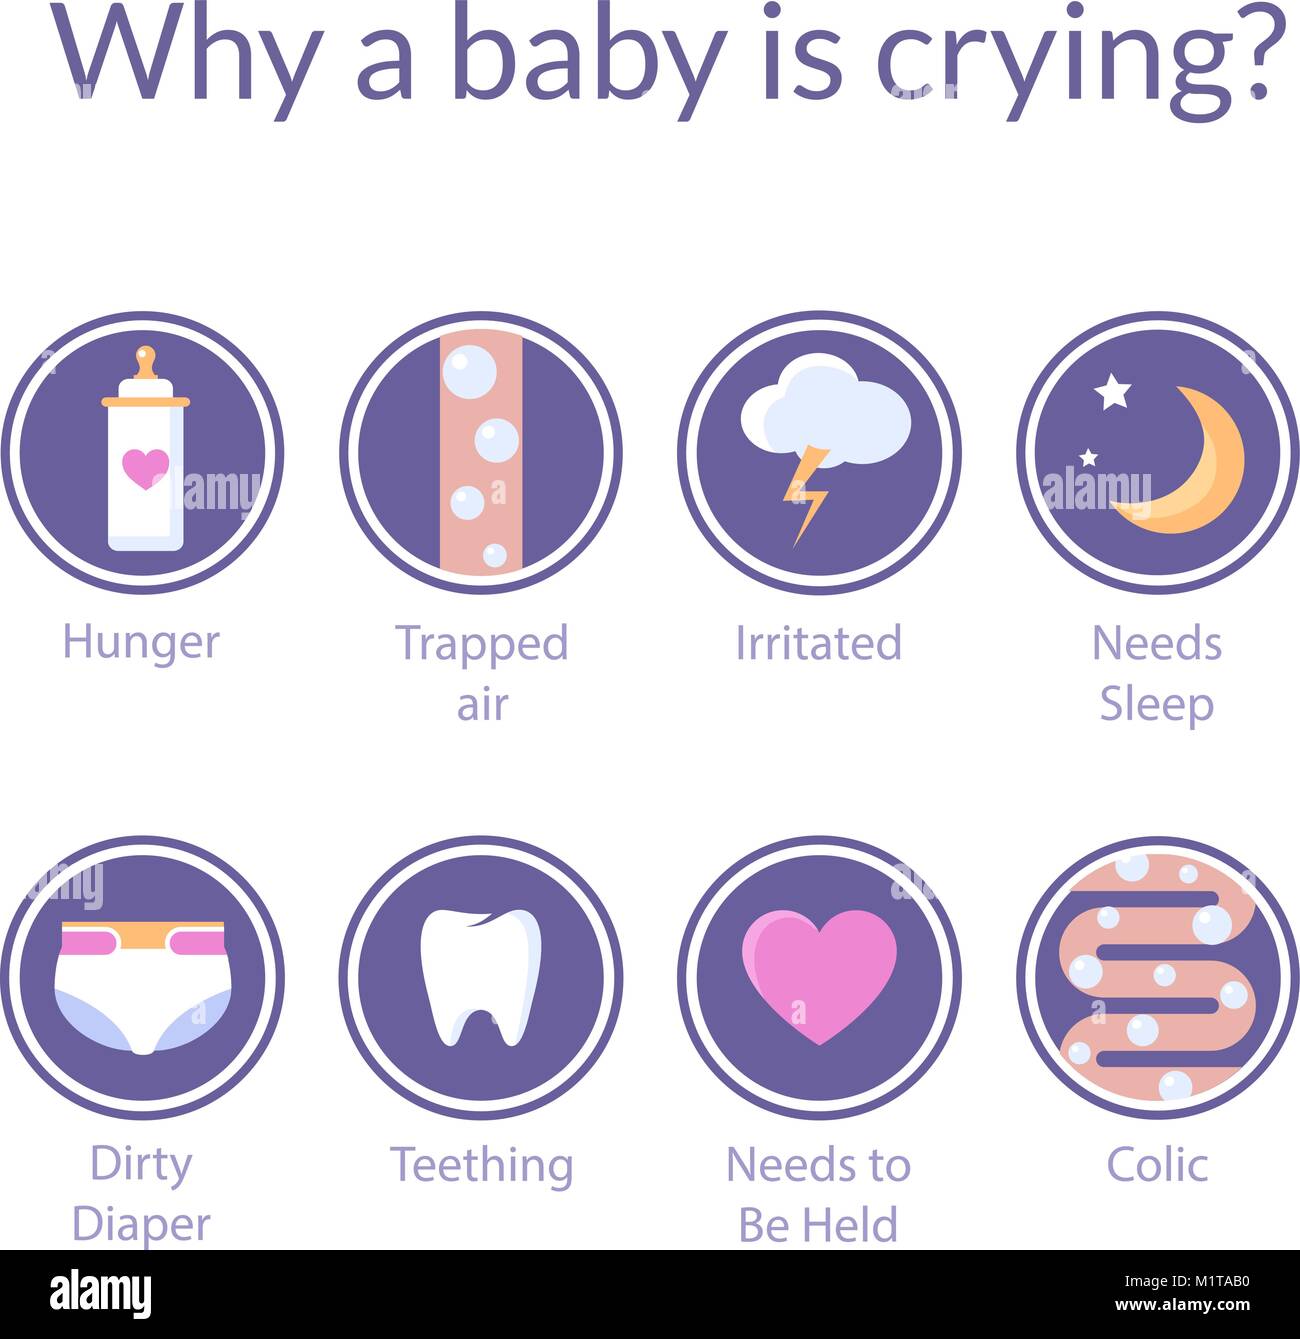 Satz von Vector Flat Style Icons mit Ursachen von Baby weinen. Kind, weil der Hungrigen, Koliken oder eingeschlossene Luft schreien können, will schlafen, schmutzige Windeln. Stock Vektor